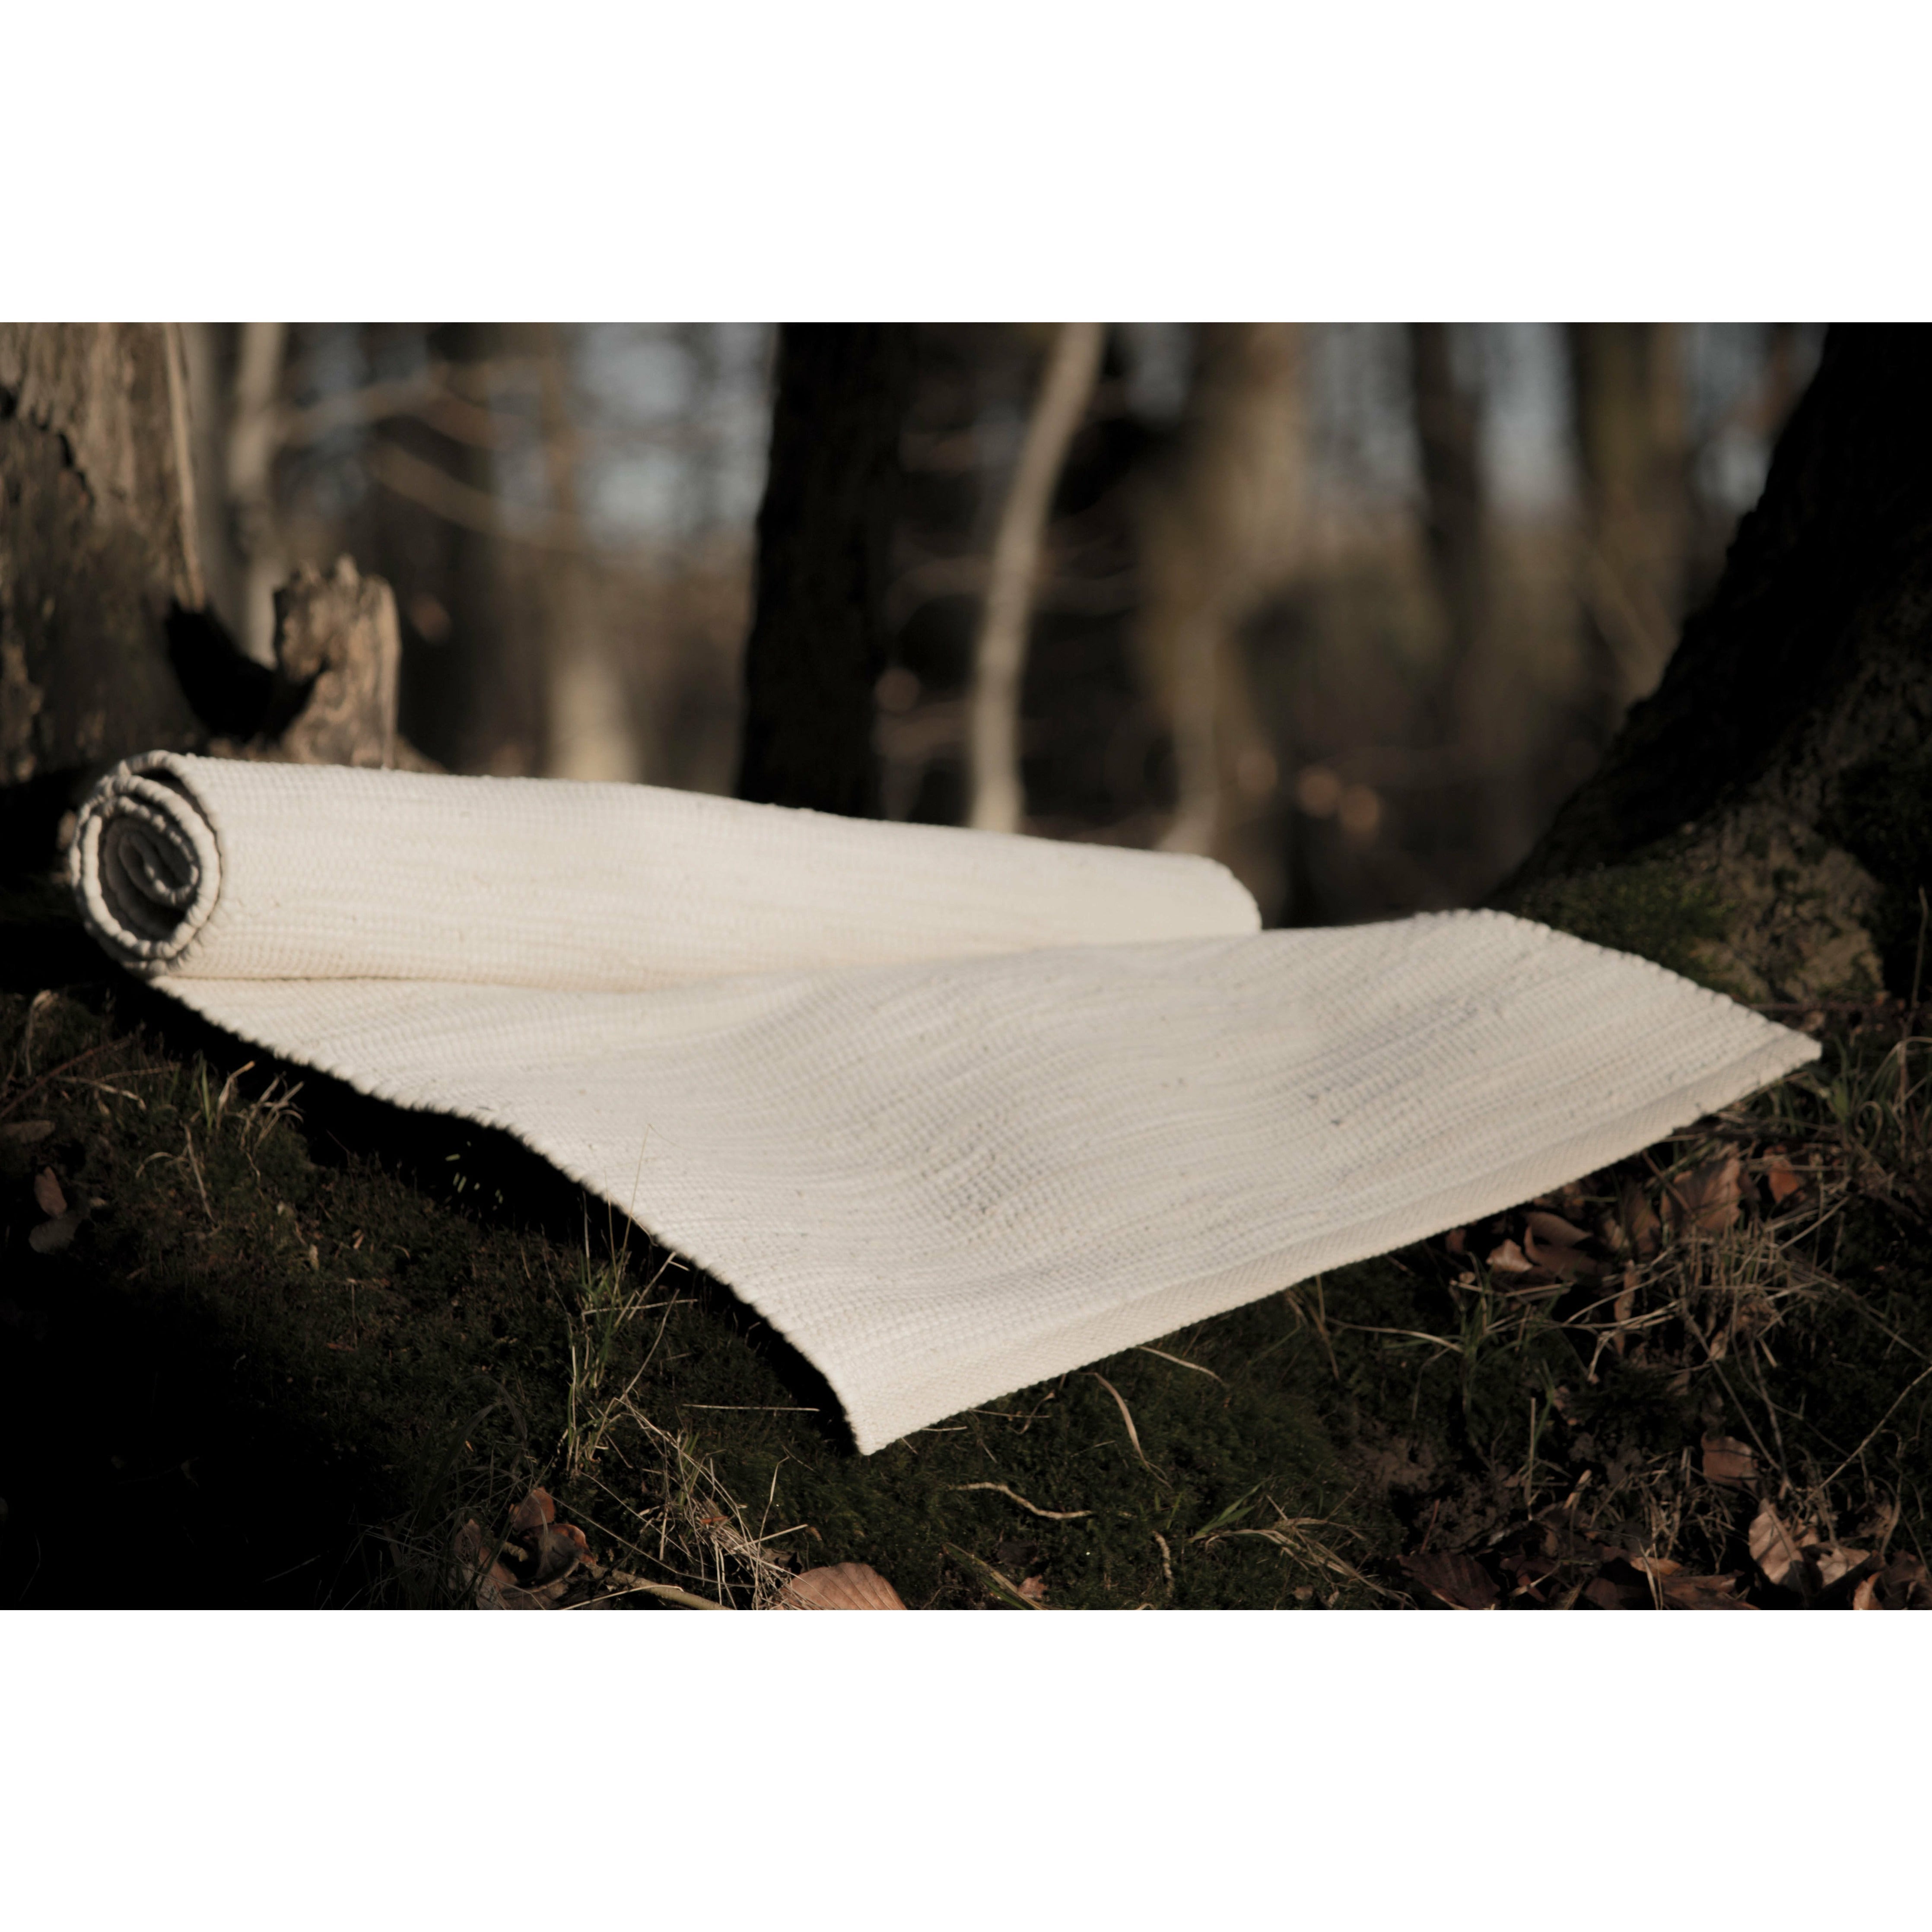 Rug Solid Katoen Tapijtwoestijn Wit, 60 x 90 cm